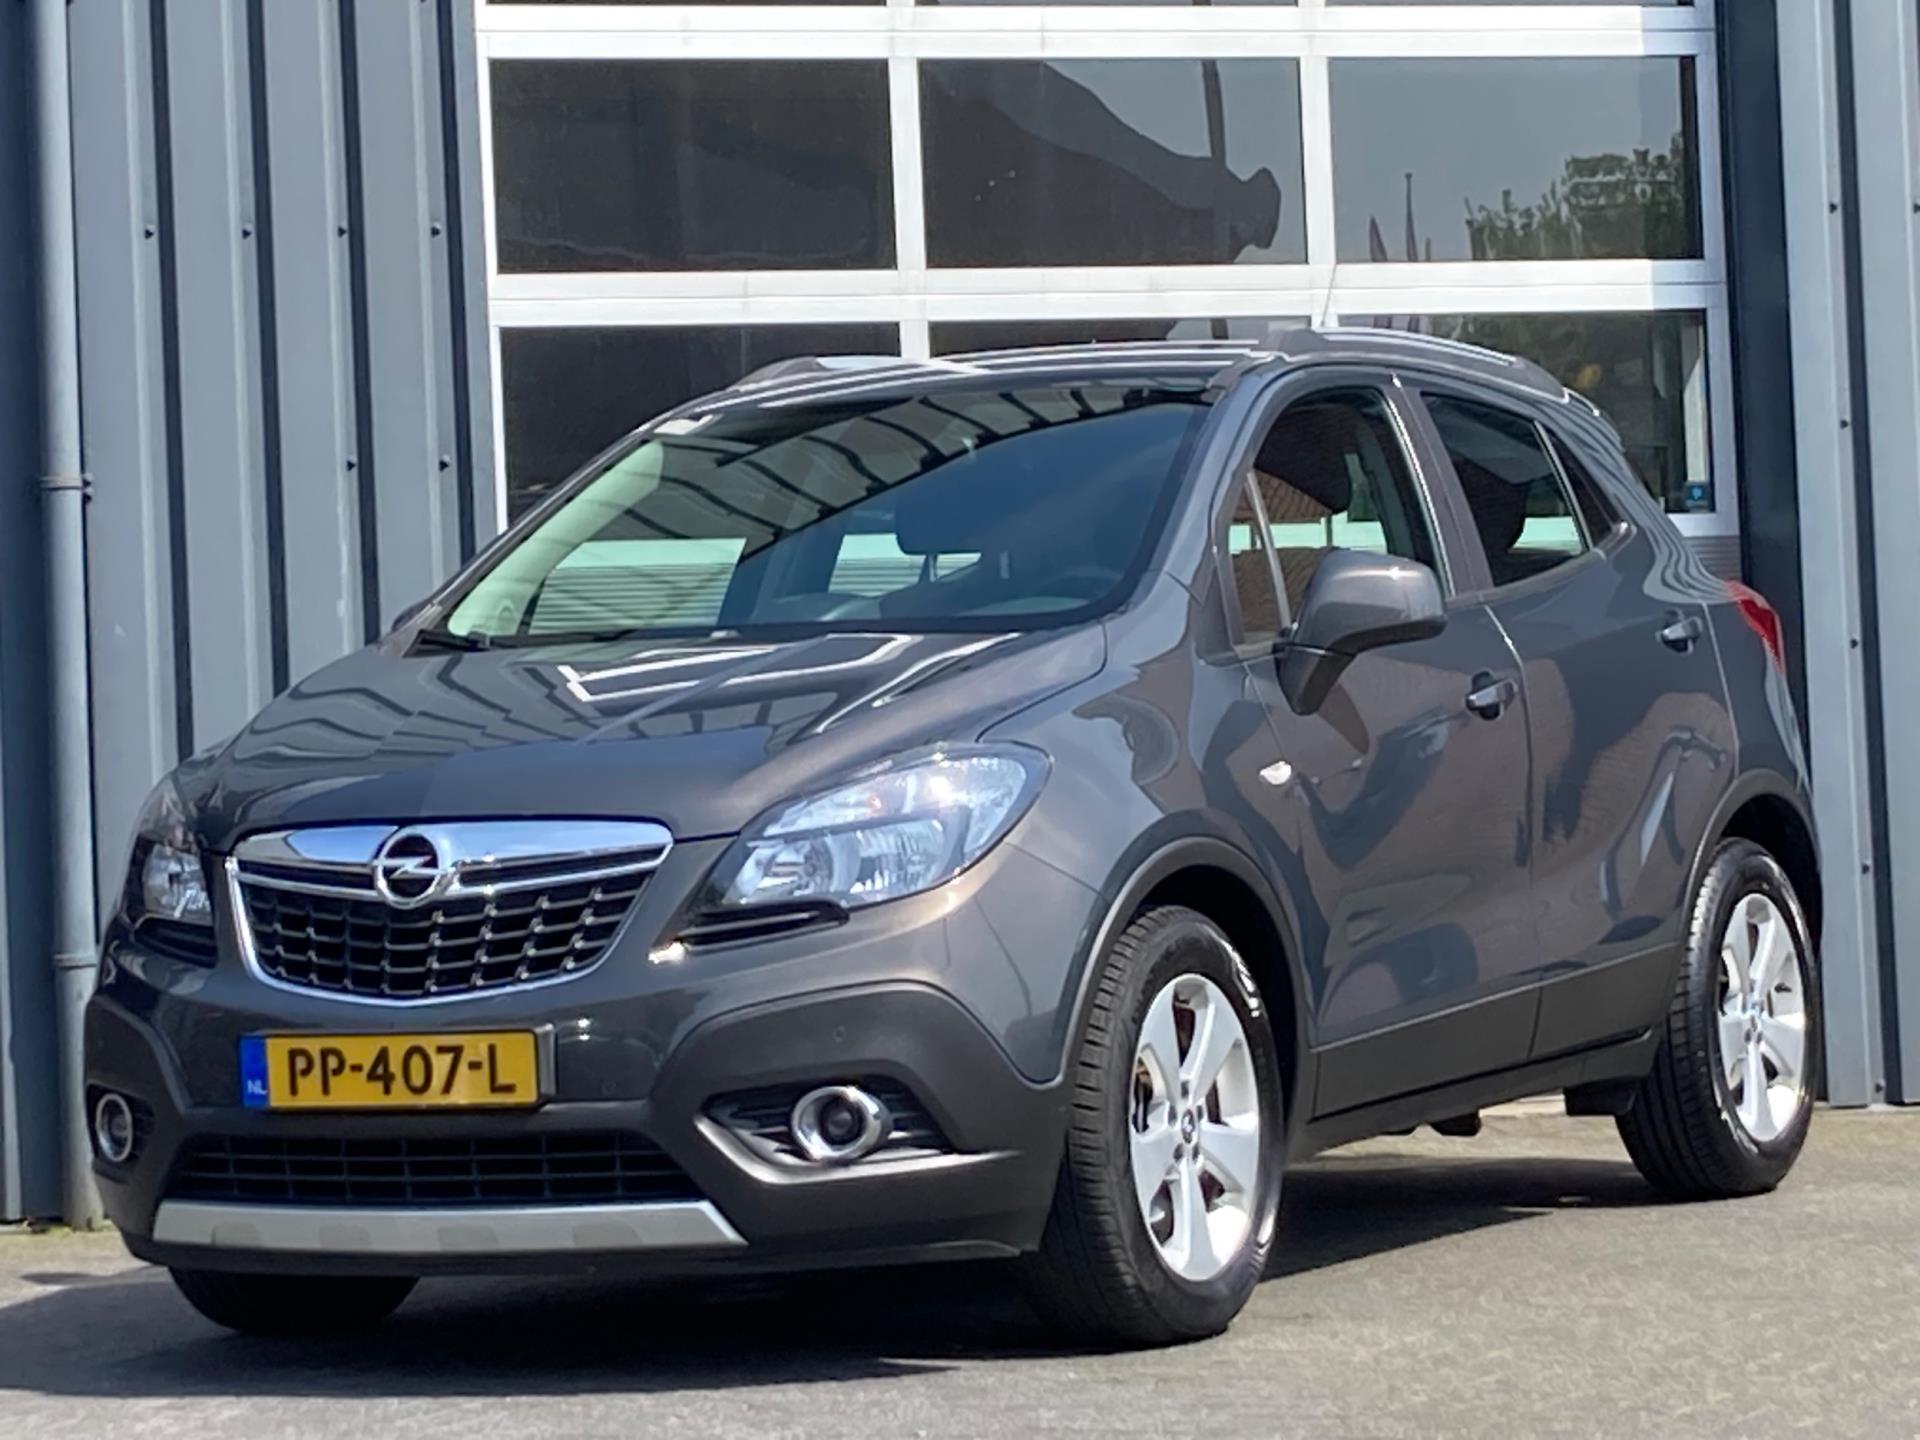 Tweedehands Opel occasion kopen